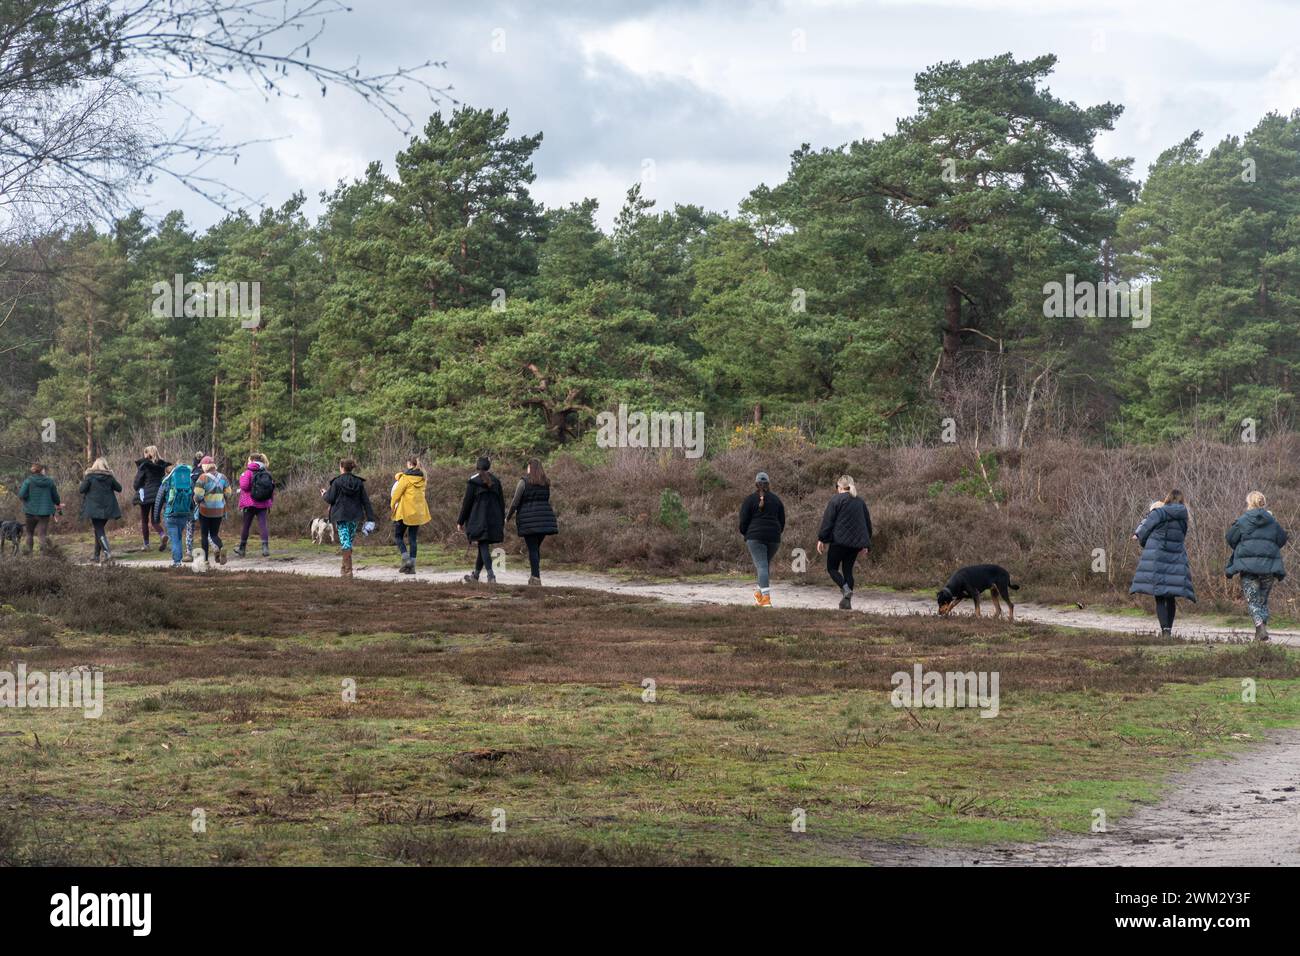 Jeunes femmes, y compris des mères portant leurs bébés, qui vont faire une promenade de groupe dans la campagne, Surrey, Angleterre, Royaume-Uni. Concept de bien-être Banque D'Images